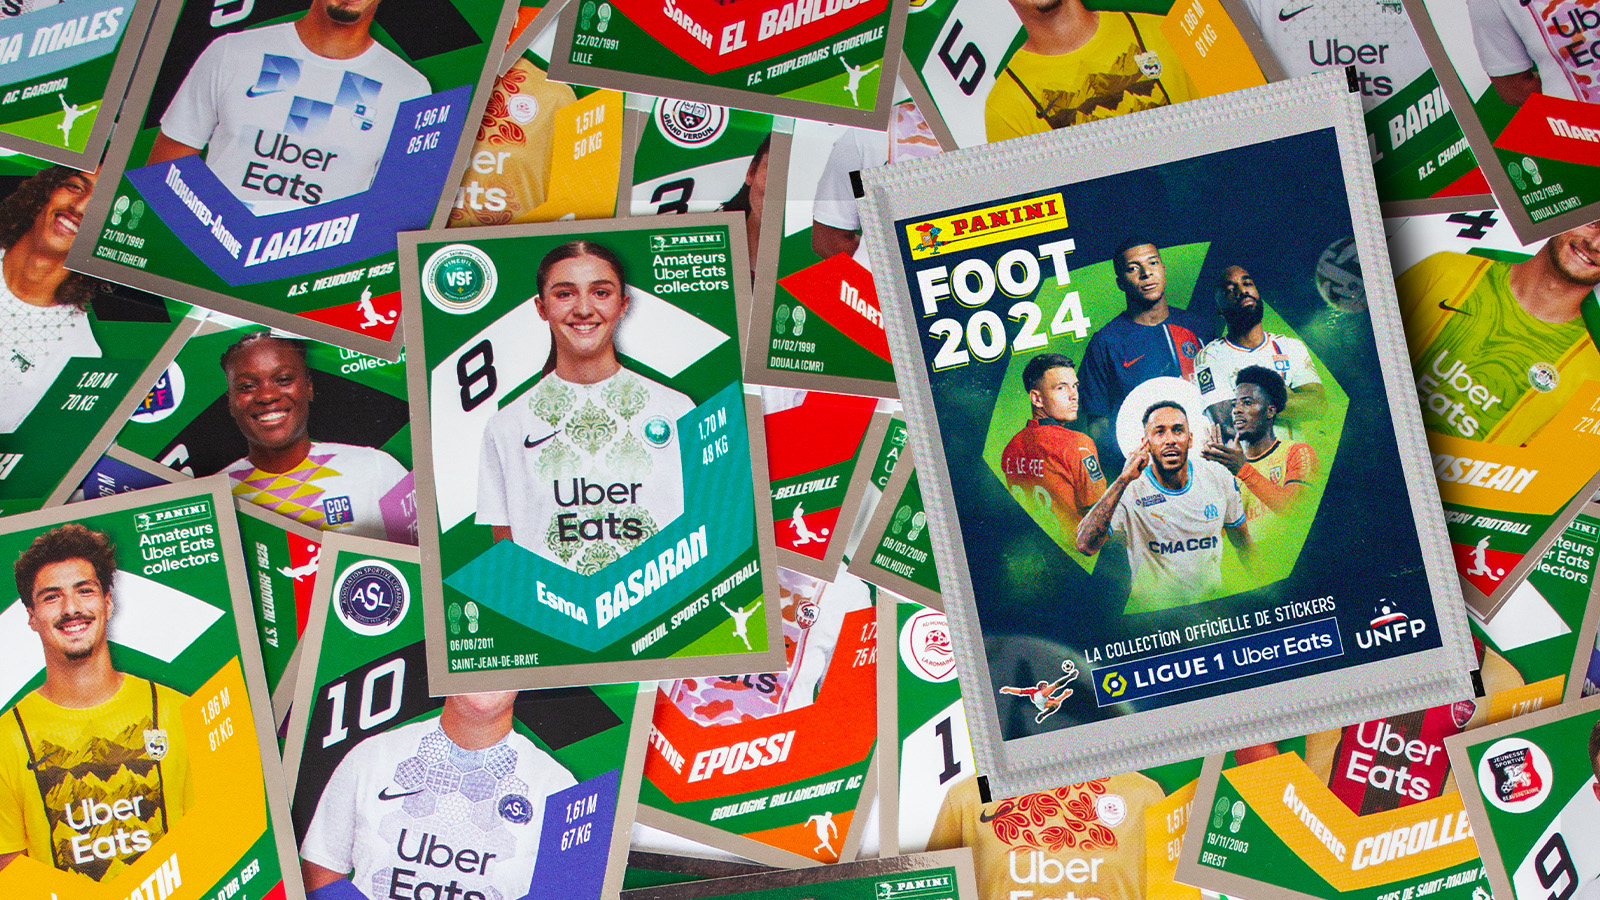 Activation - Des joueurs amateurs s'invitent dans l'album Panini 2024 de la  Ligue 1 grâce à Uber Eats 